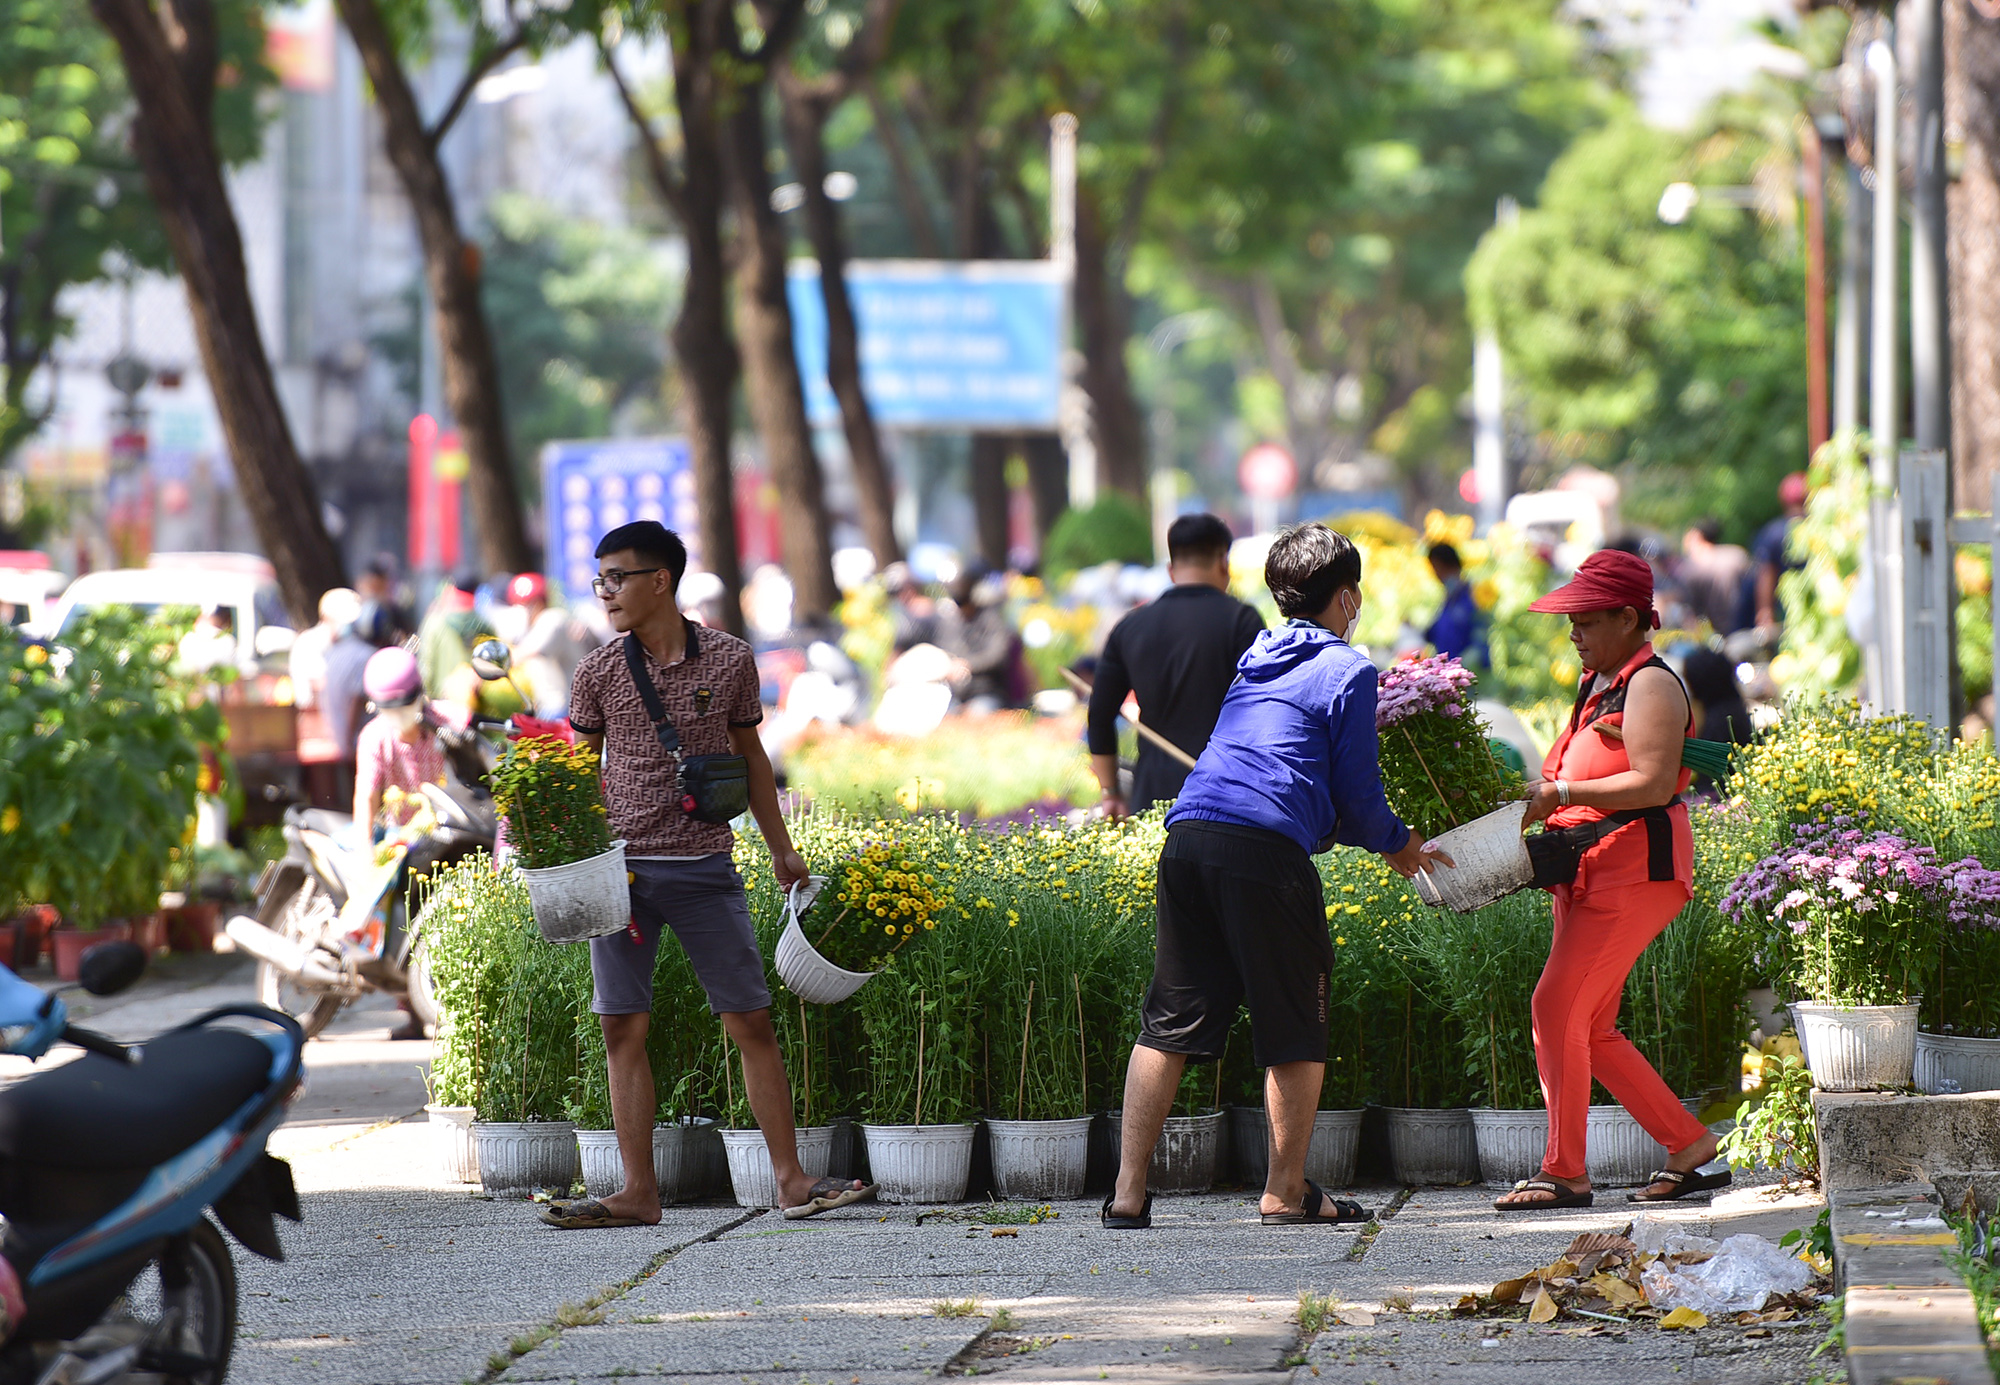 Sáng 29 Tết, trước thời điểm chợ hoa công viên 23/9 (quận 1, TP.HCM) phải đóng cửa trả mặt bằng, nhiều người dân đổ về đây mua hoa kiểng giá rẻ giảm giá từ 30-50%.